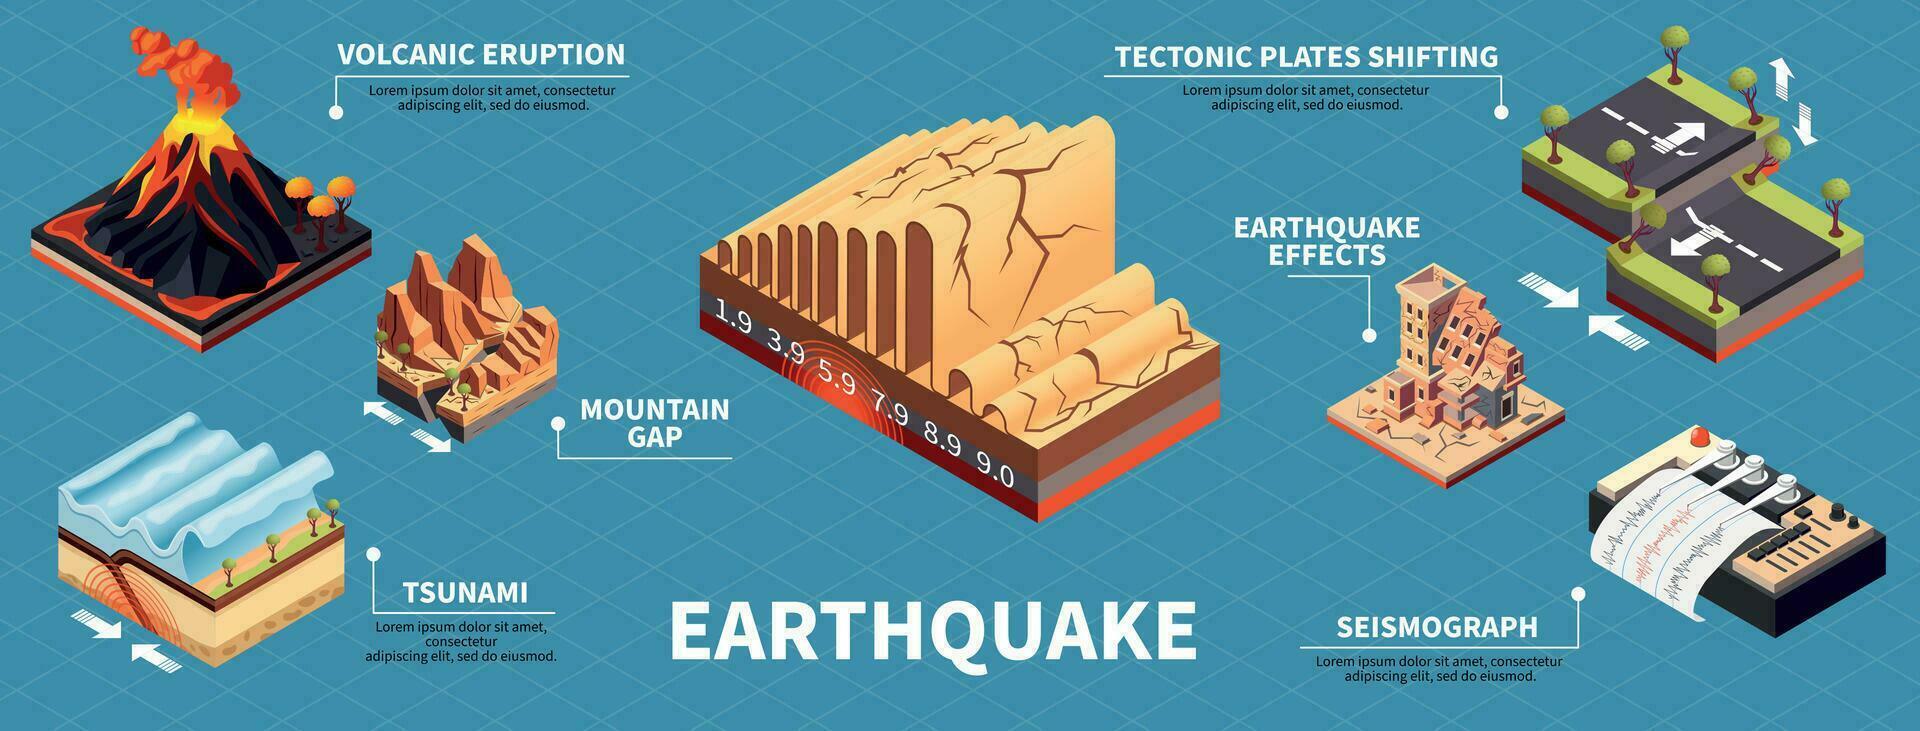 Erdbeben Katastrophe Infografik einstellen vektor